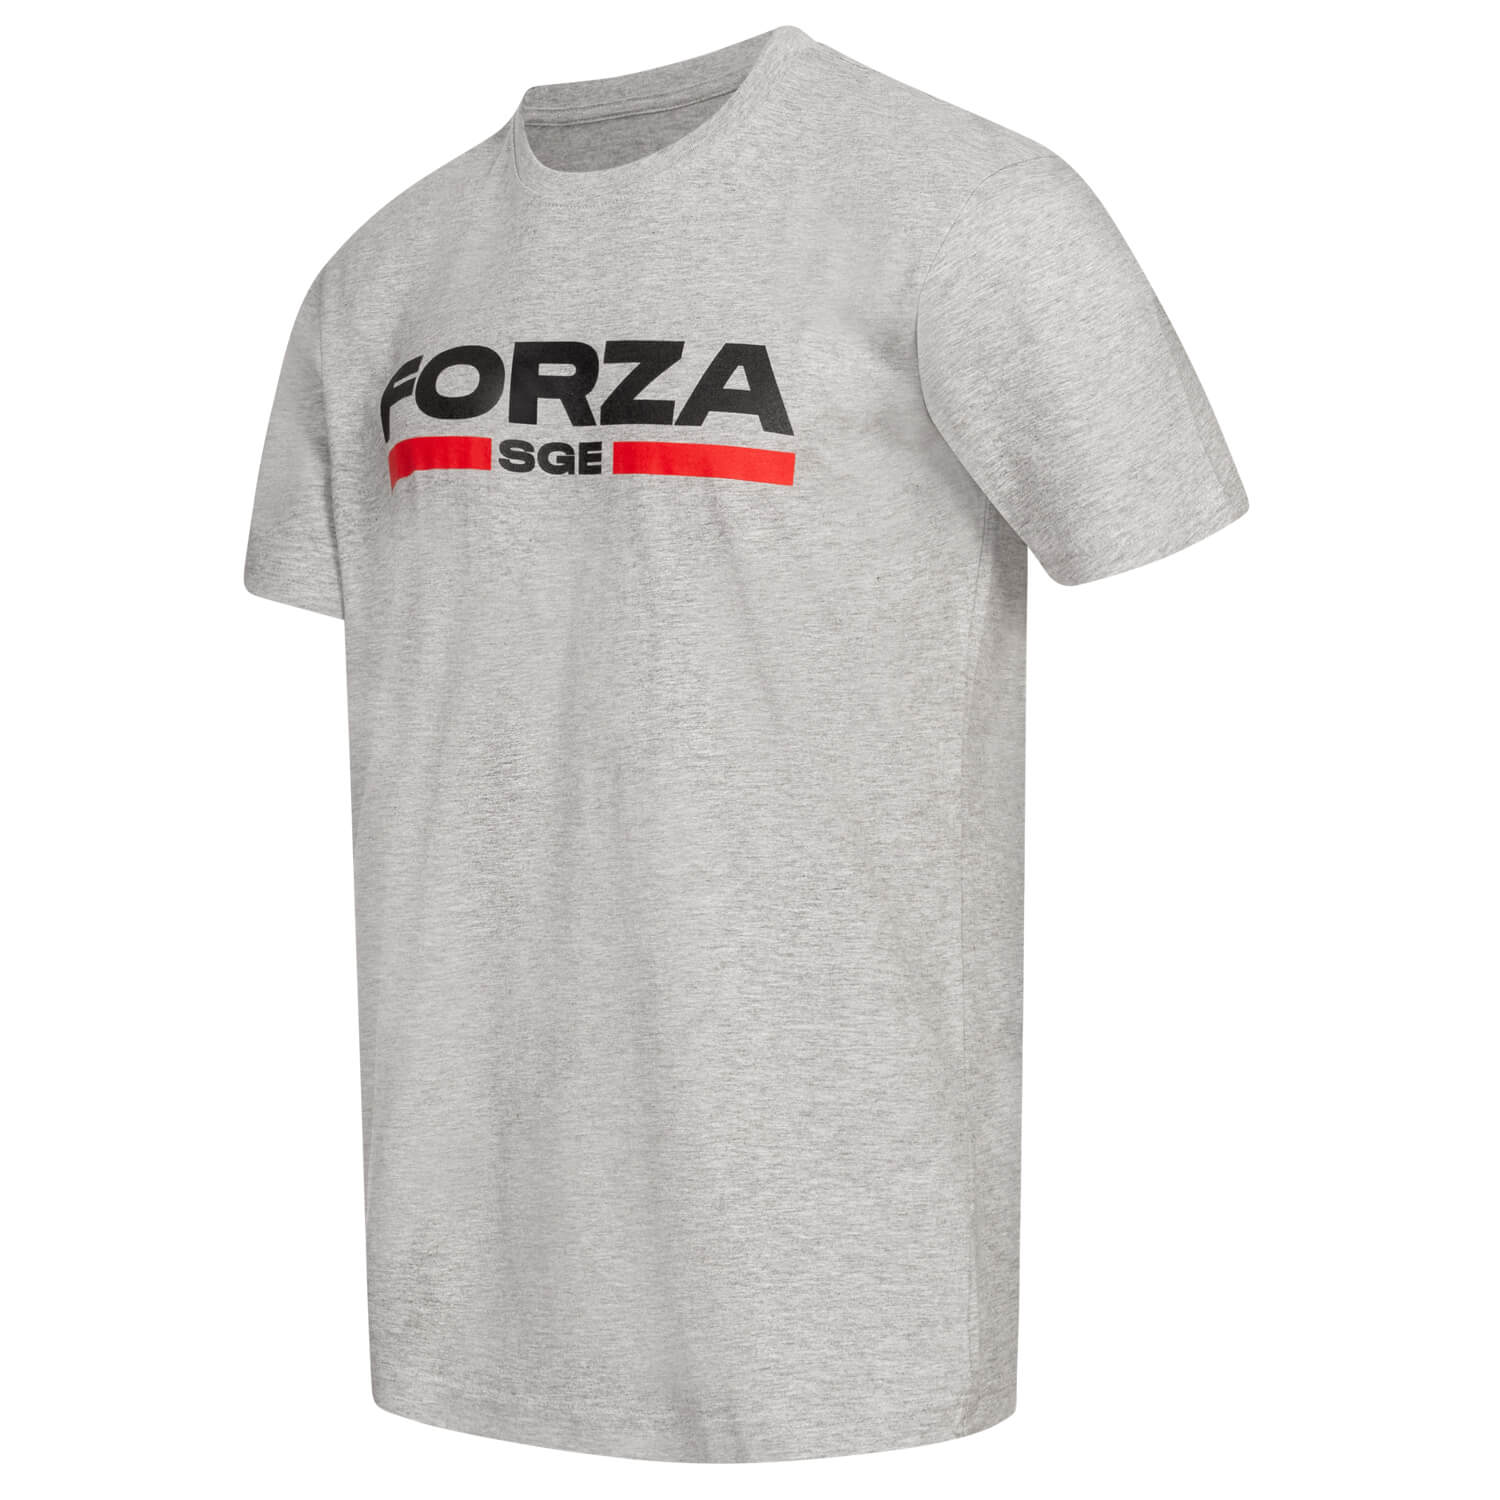 Bild 3: T-Shirt Forza SGE